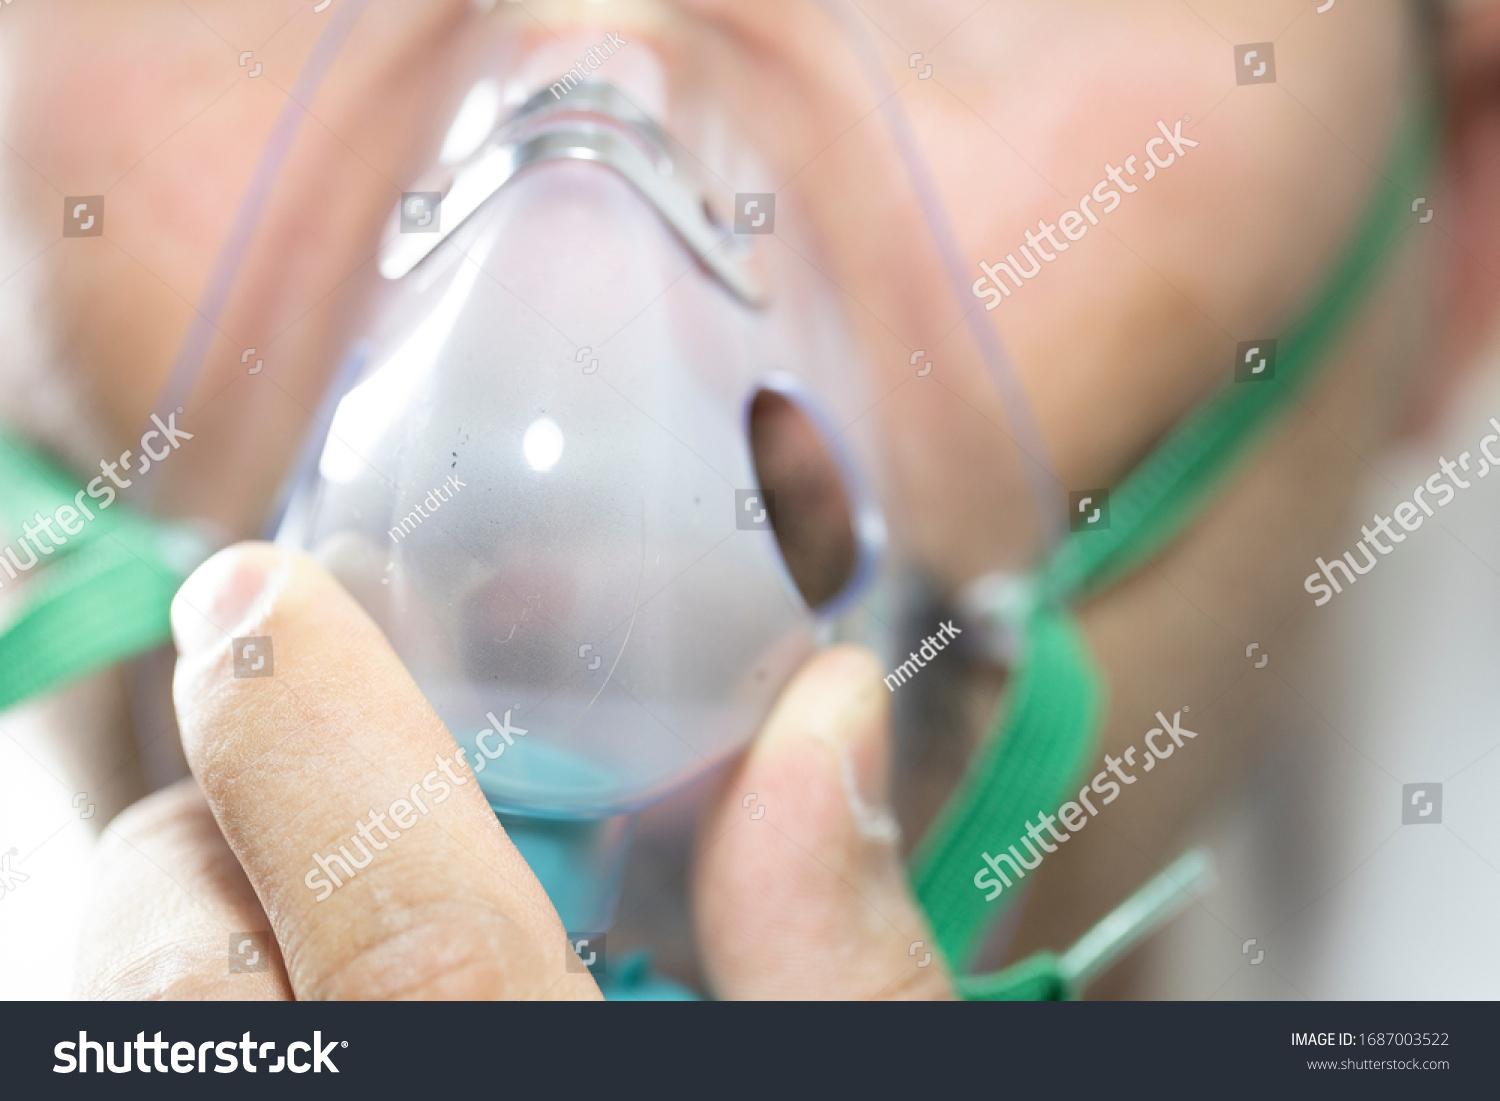 髭を生やした男は顔に酸素マスクをつけている 接写 患者は呼吸が悪い の写真素材 今すぐ編集